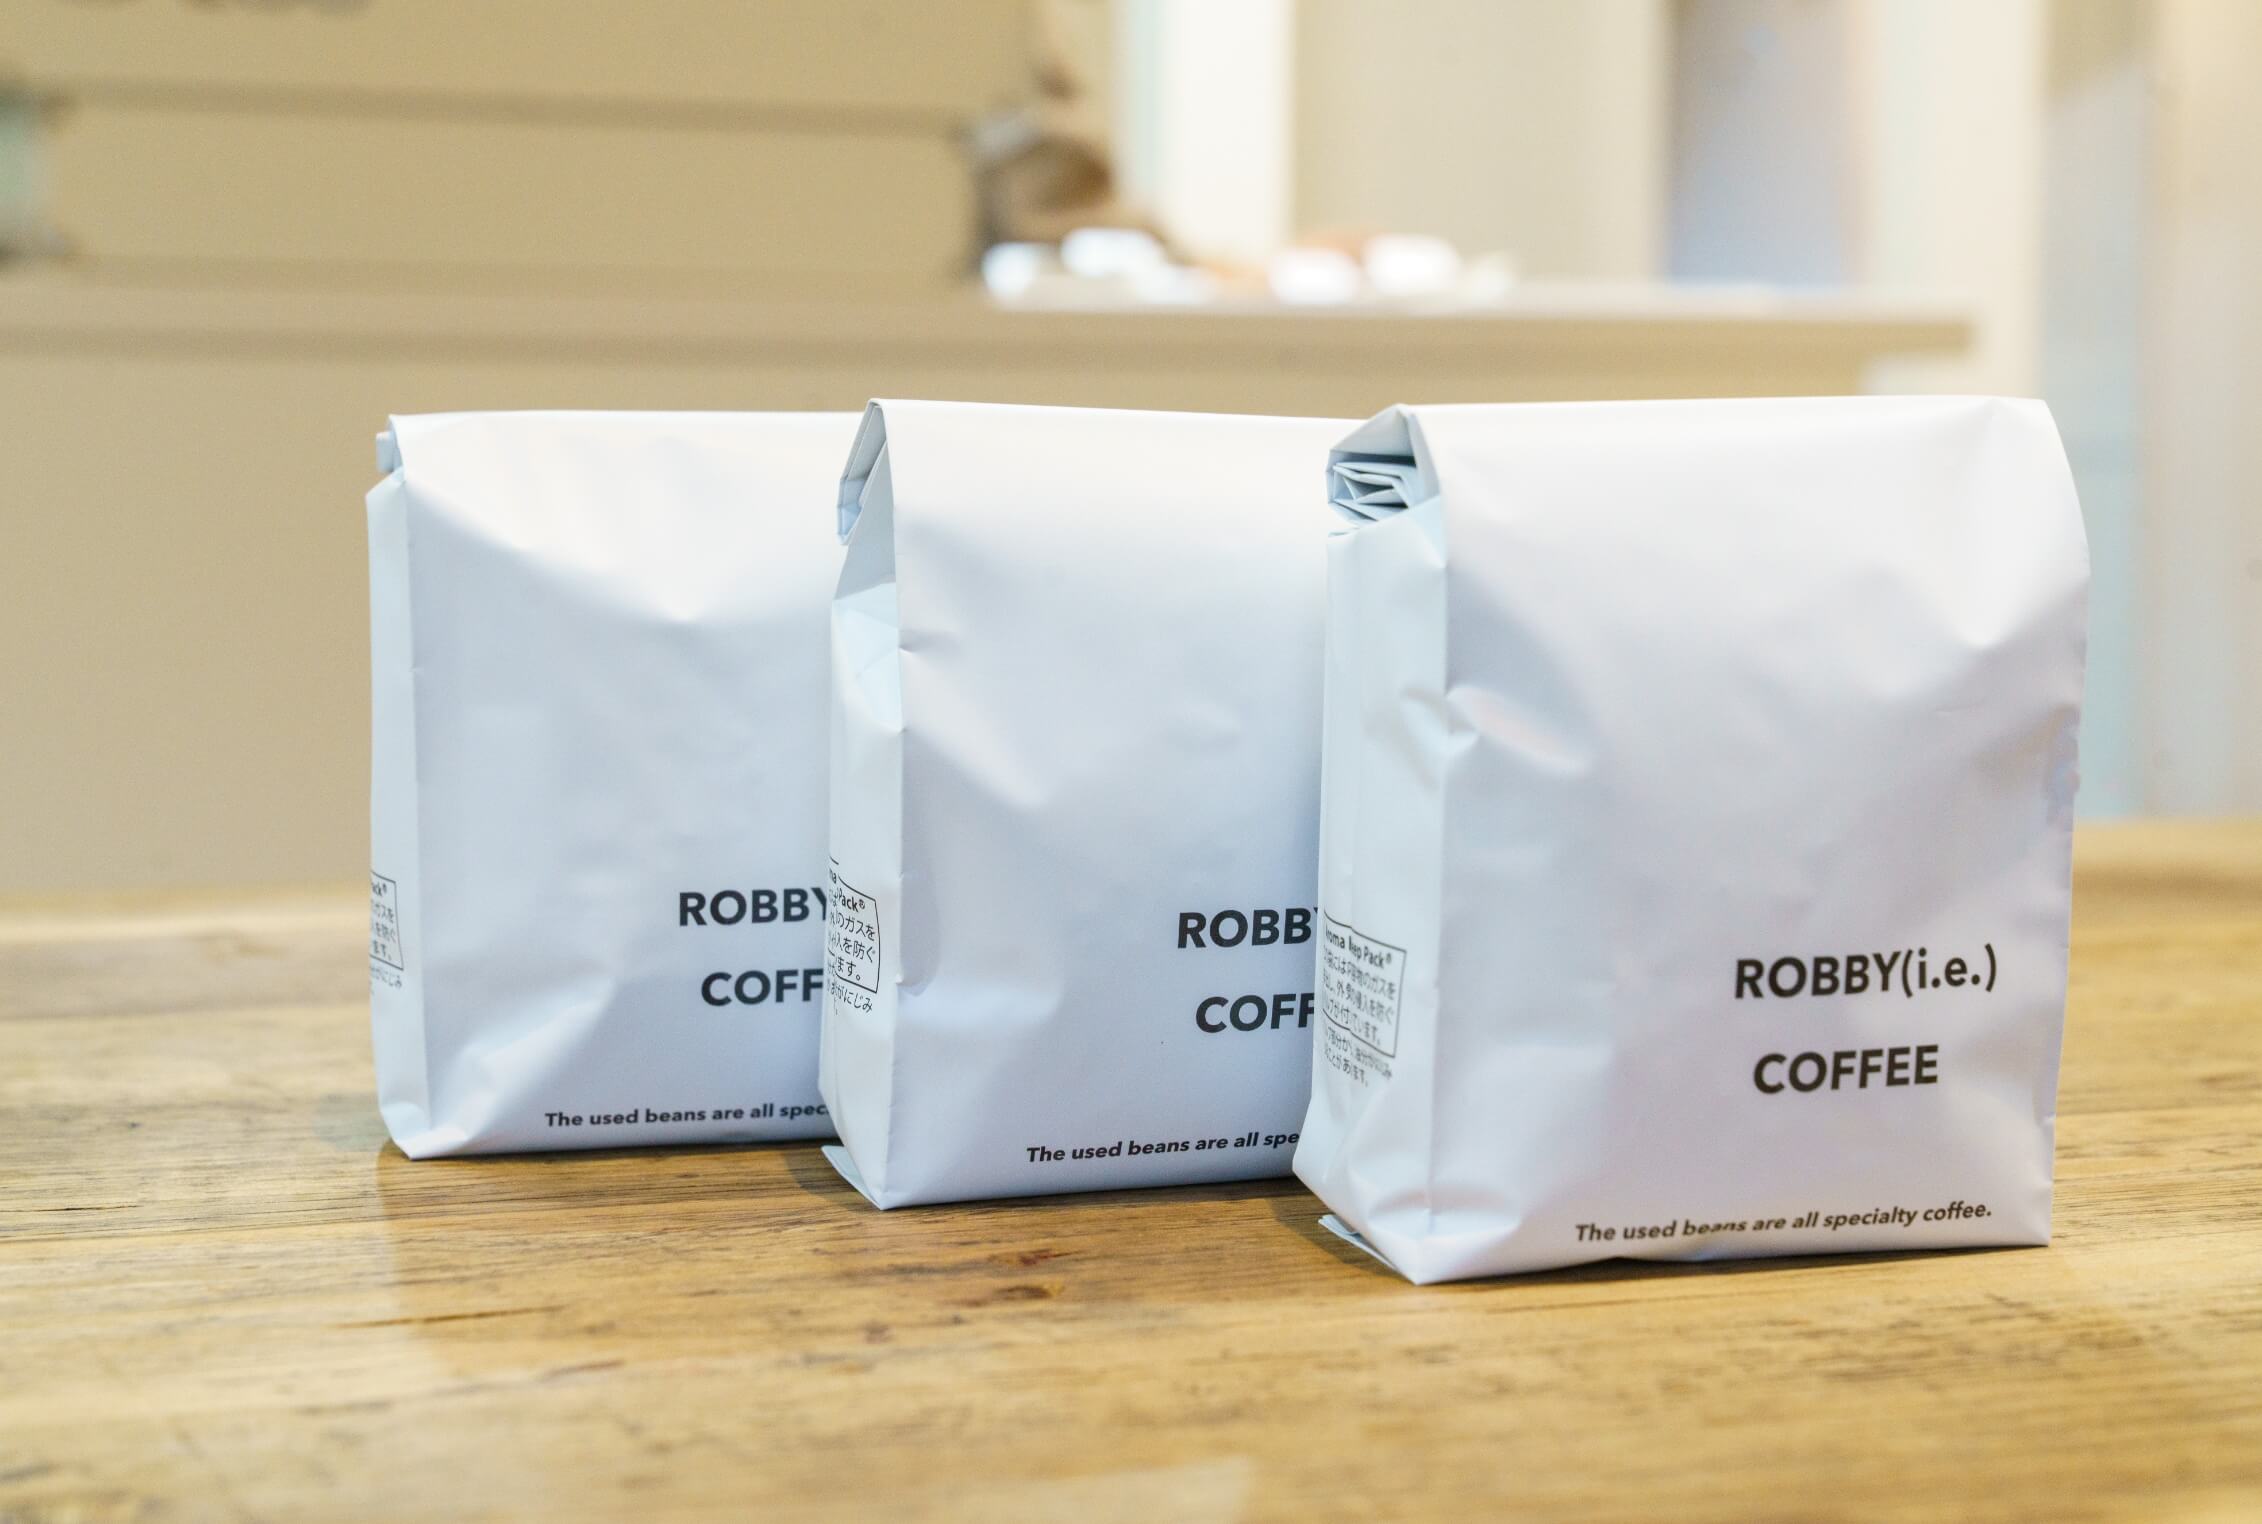 ROBBY(i.e.)COFFEE